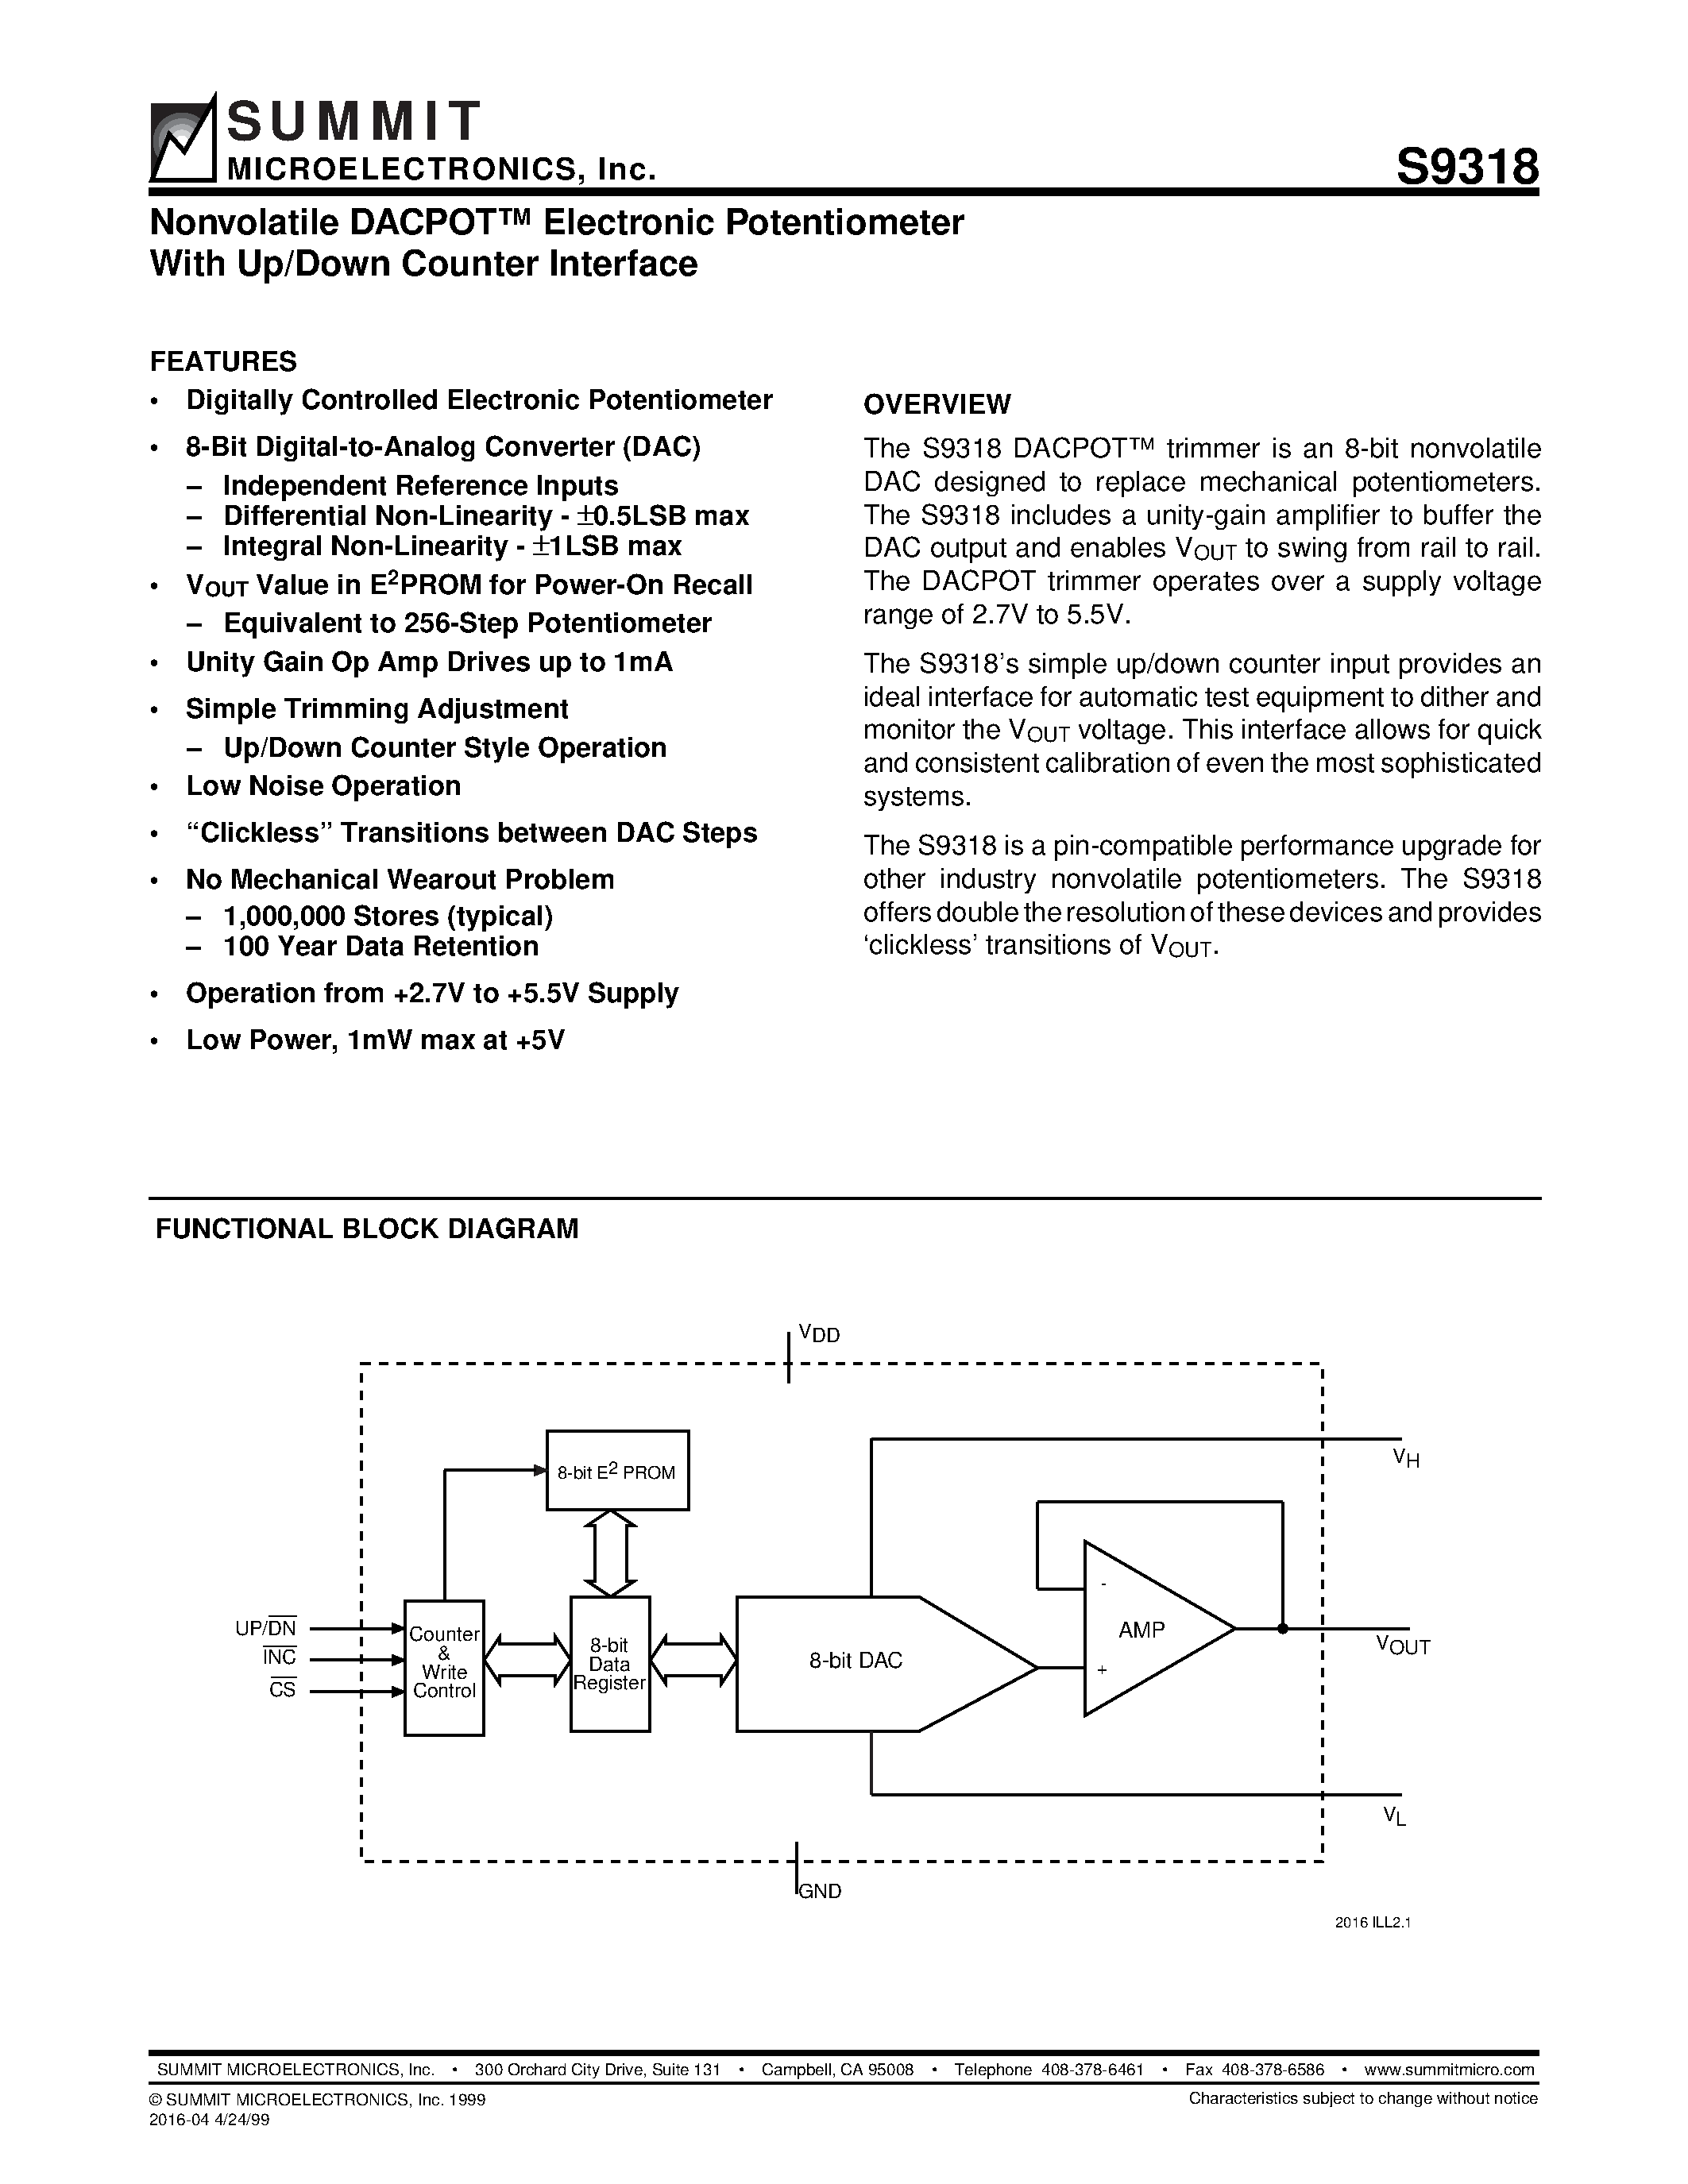 Даташит S9318S - Nonvolatile DACPOT Electronic Potentiometer With Up/Down Counter Interface страница 1